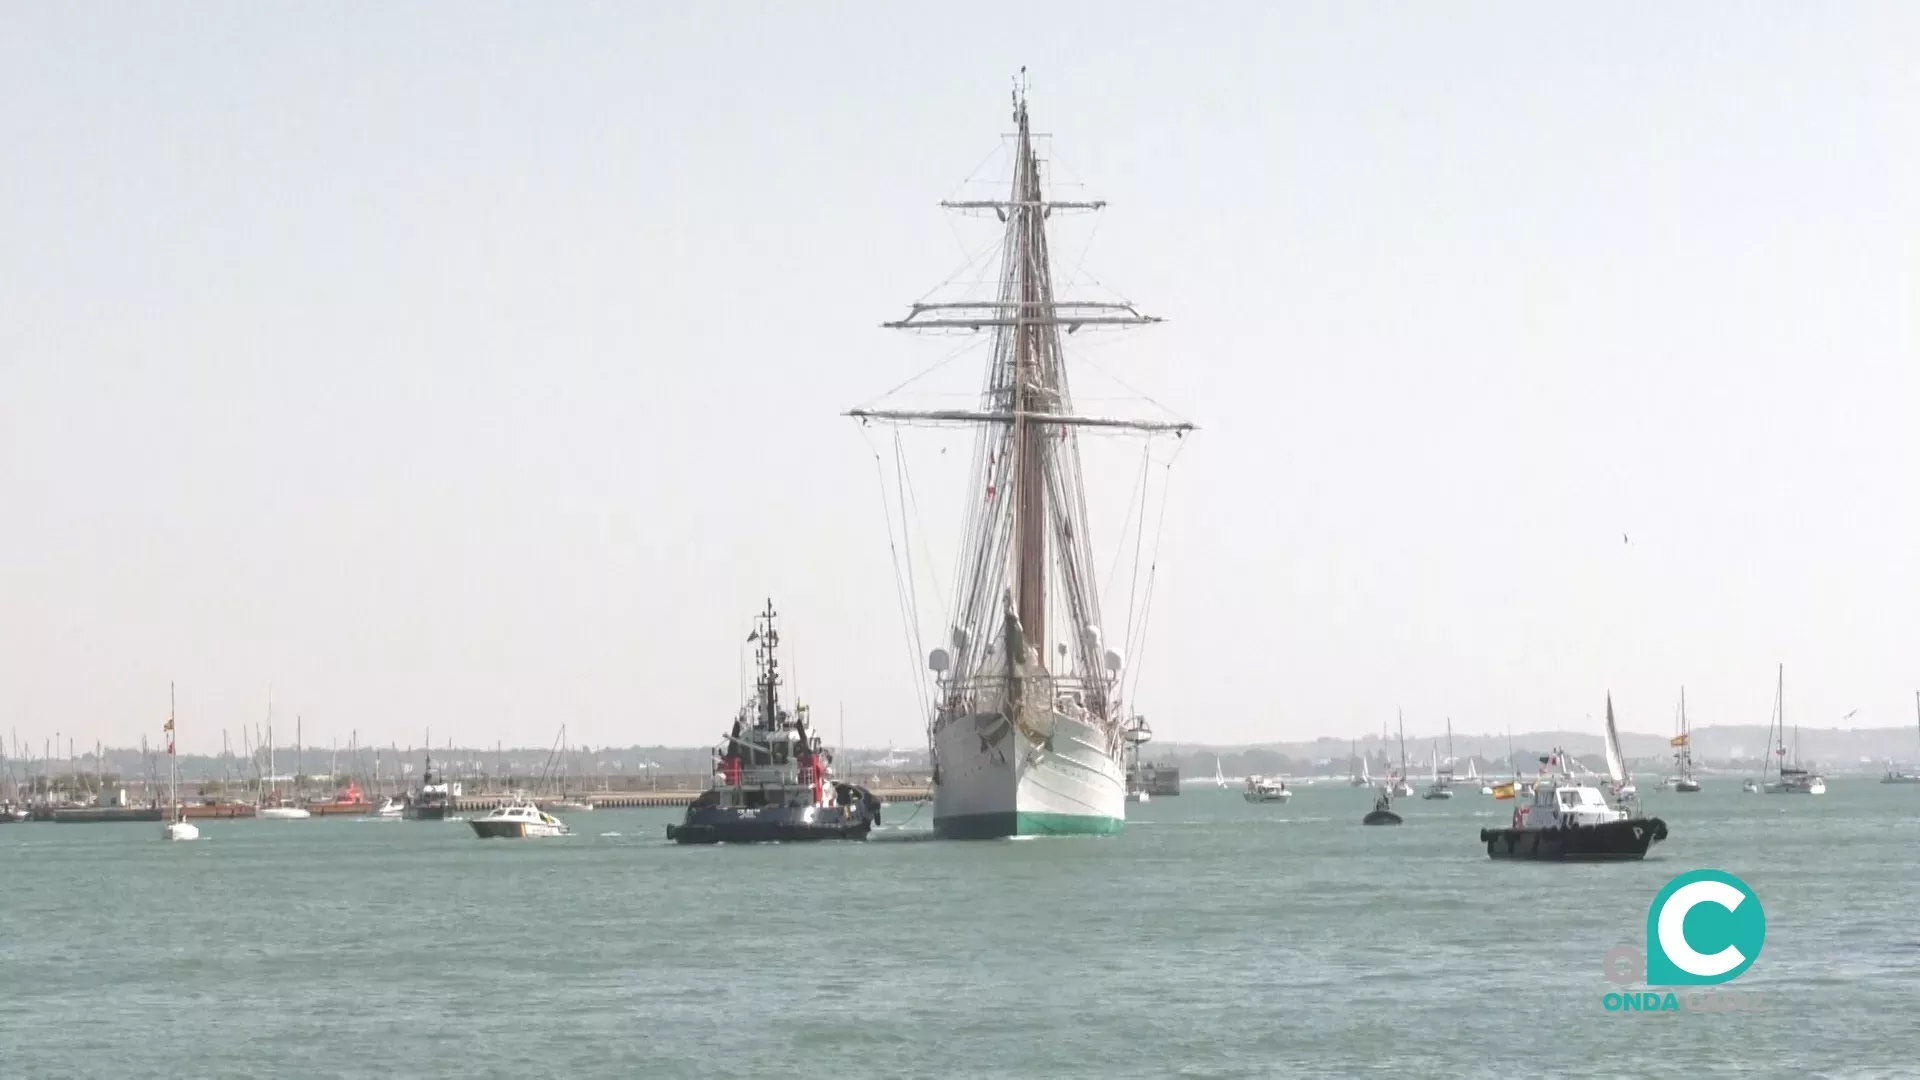 El buque escuela de la Armada llegando al Puerto de la Bahía de Cádiz.